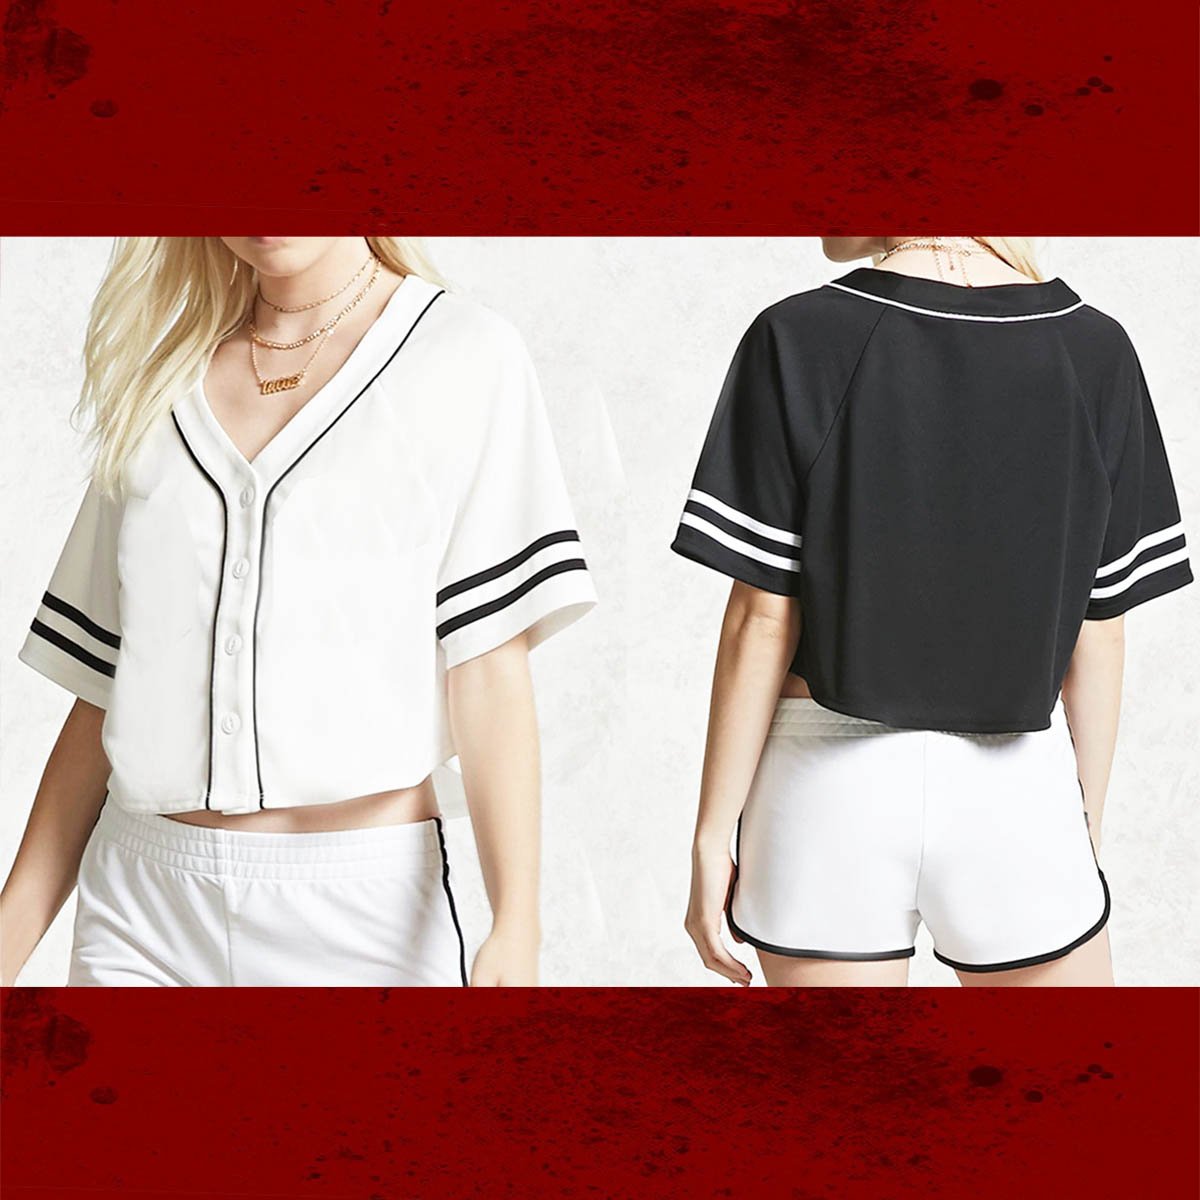 Crop Top Baseball Jerseys & Uniforms - Crop Top Jerseys for Women - FansIdea